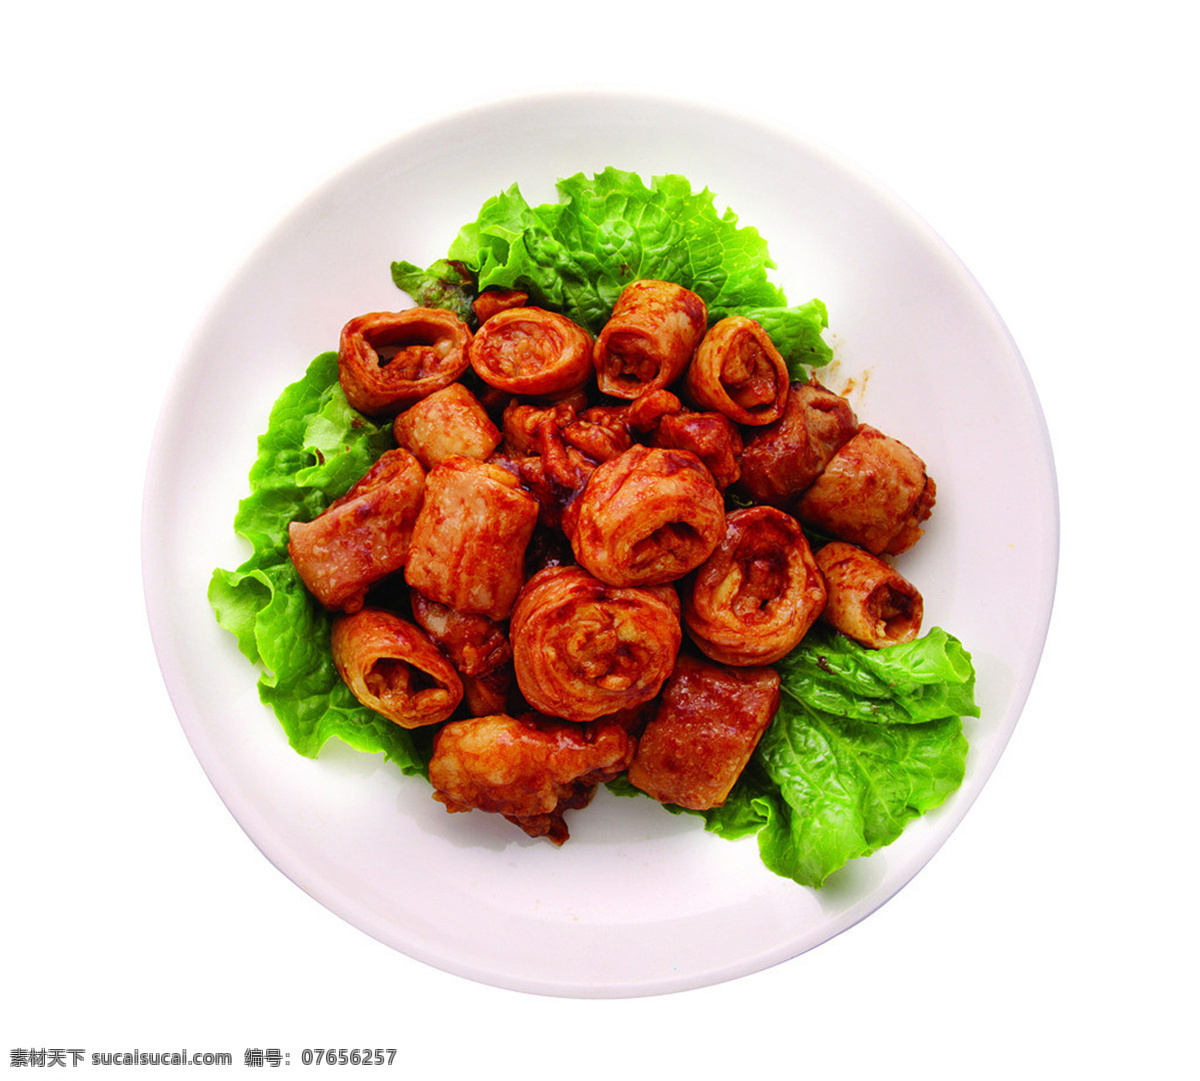 红烧大肠 美食 传统美食 餐饮美食 高清菜谱用图